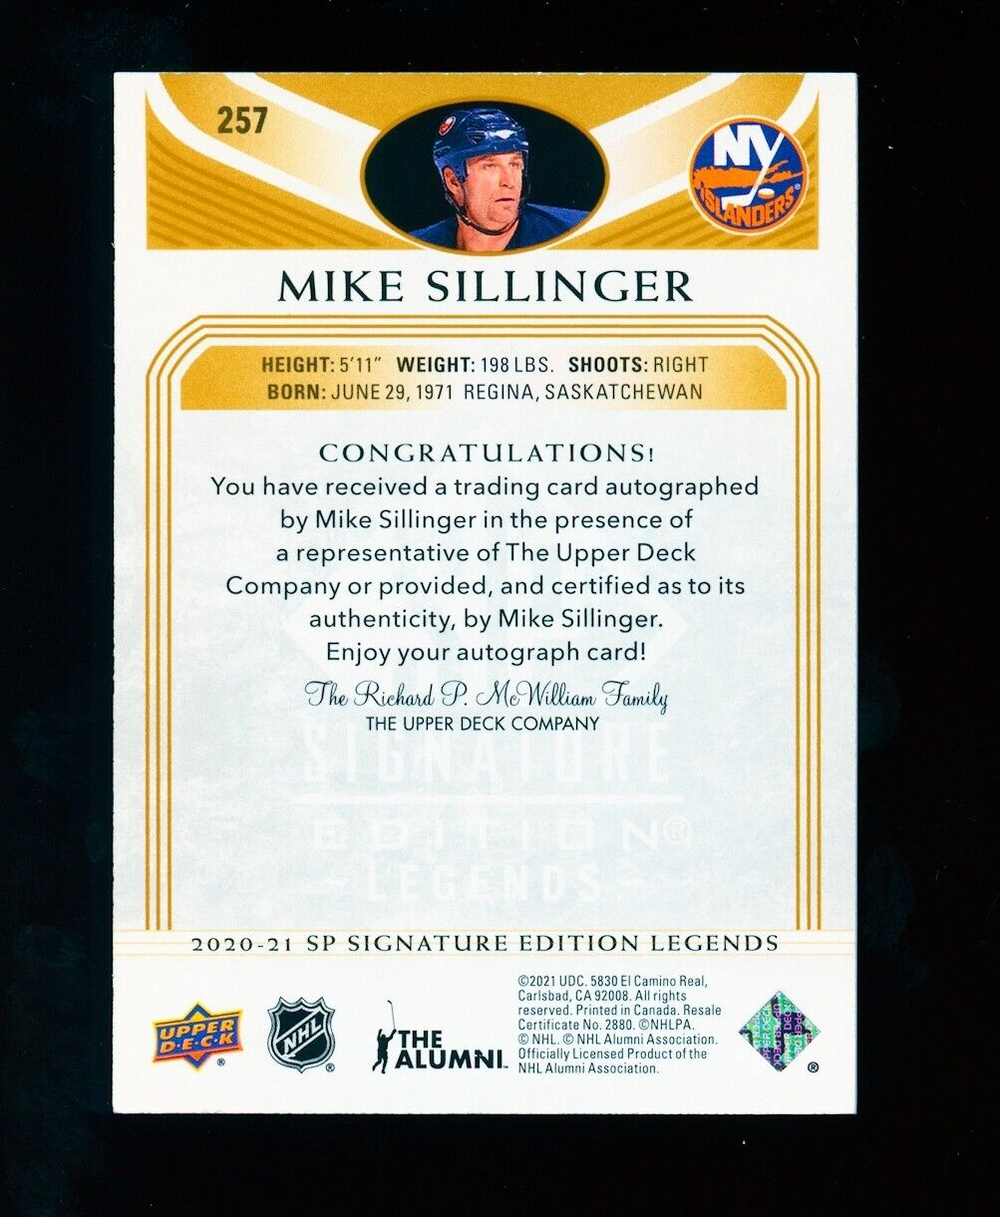 2021-22 NHL SP Signature Edition Legends Base Auto #257 Mike Sillinger